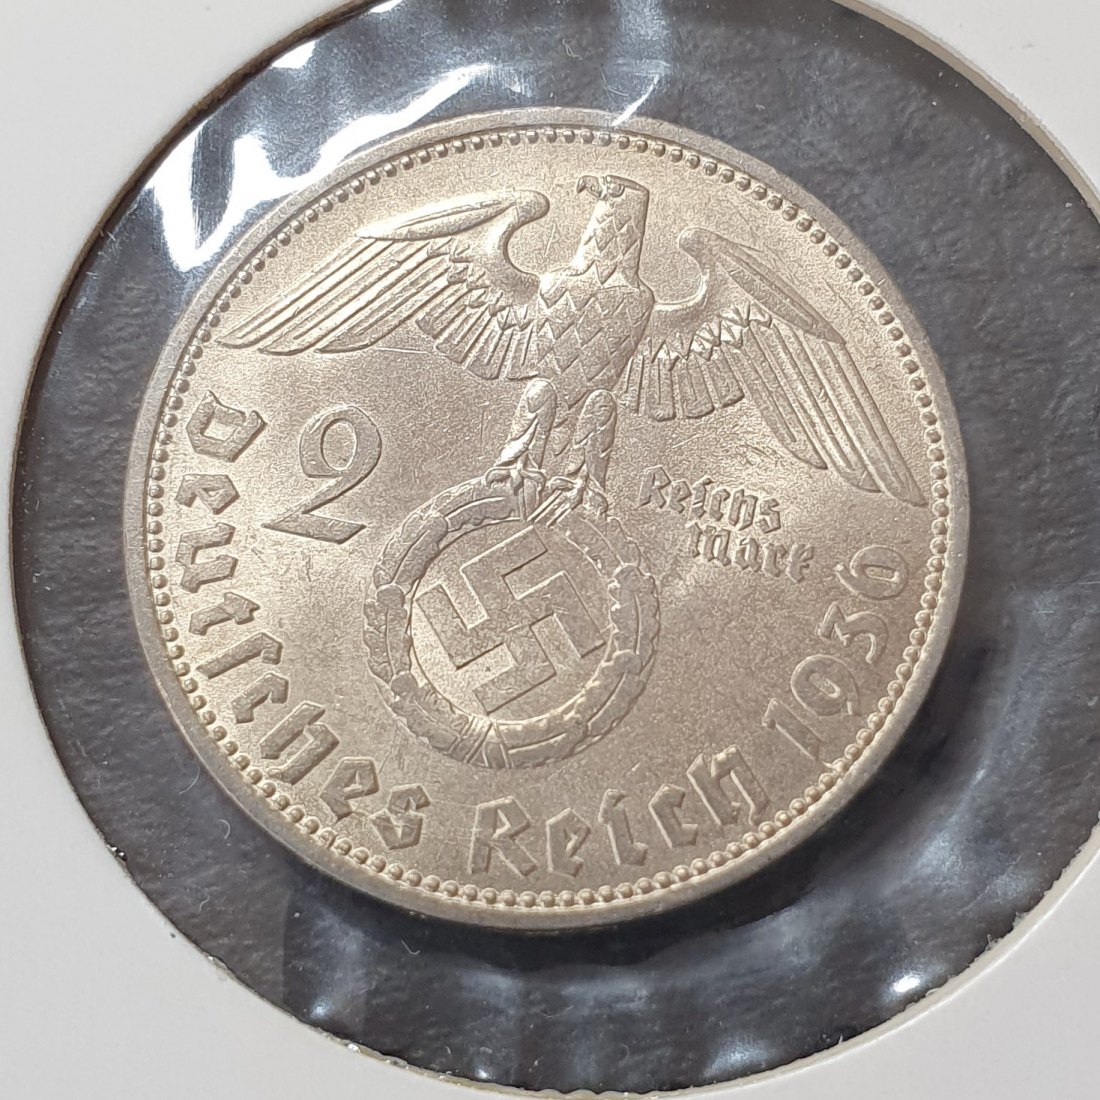  Drittes Reich 2 Reichsmark 1936 D Deutsches Reich Silber Münze ZUSTAND!   